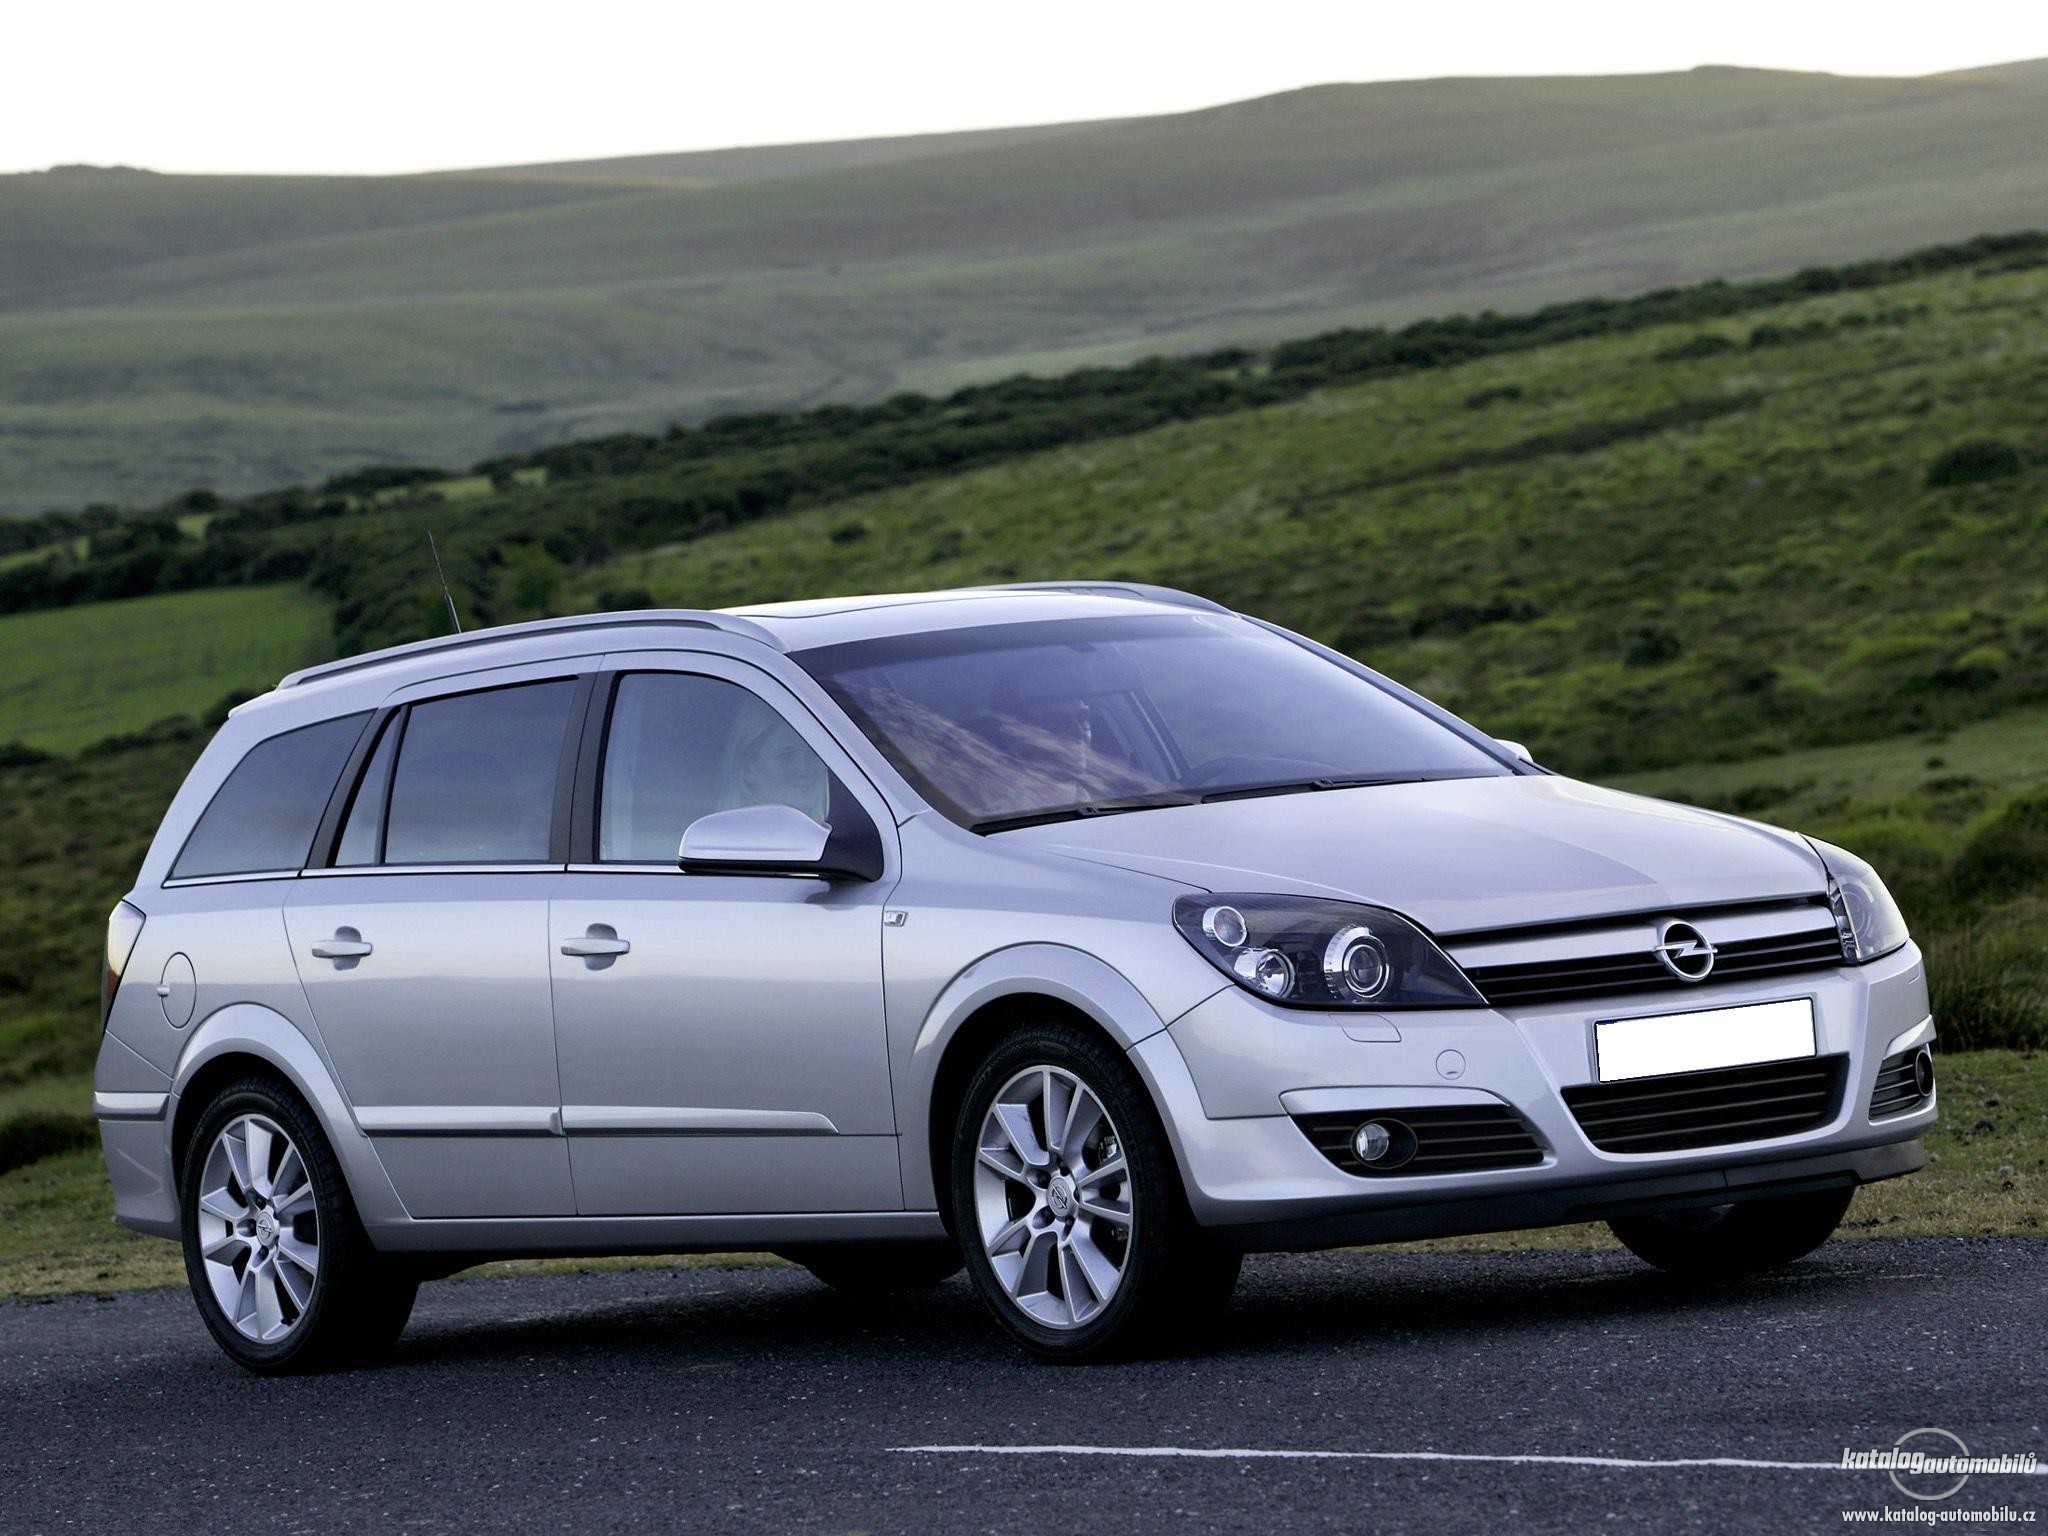 Opel Astra Caravan 18l. View Download Wallpaper. 2048x1536. Comments